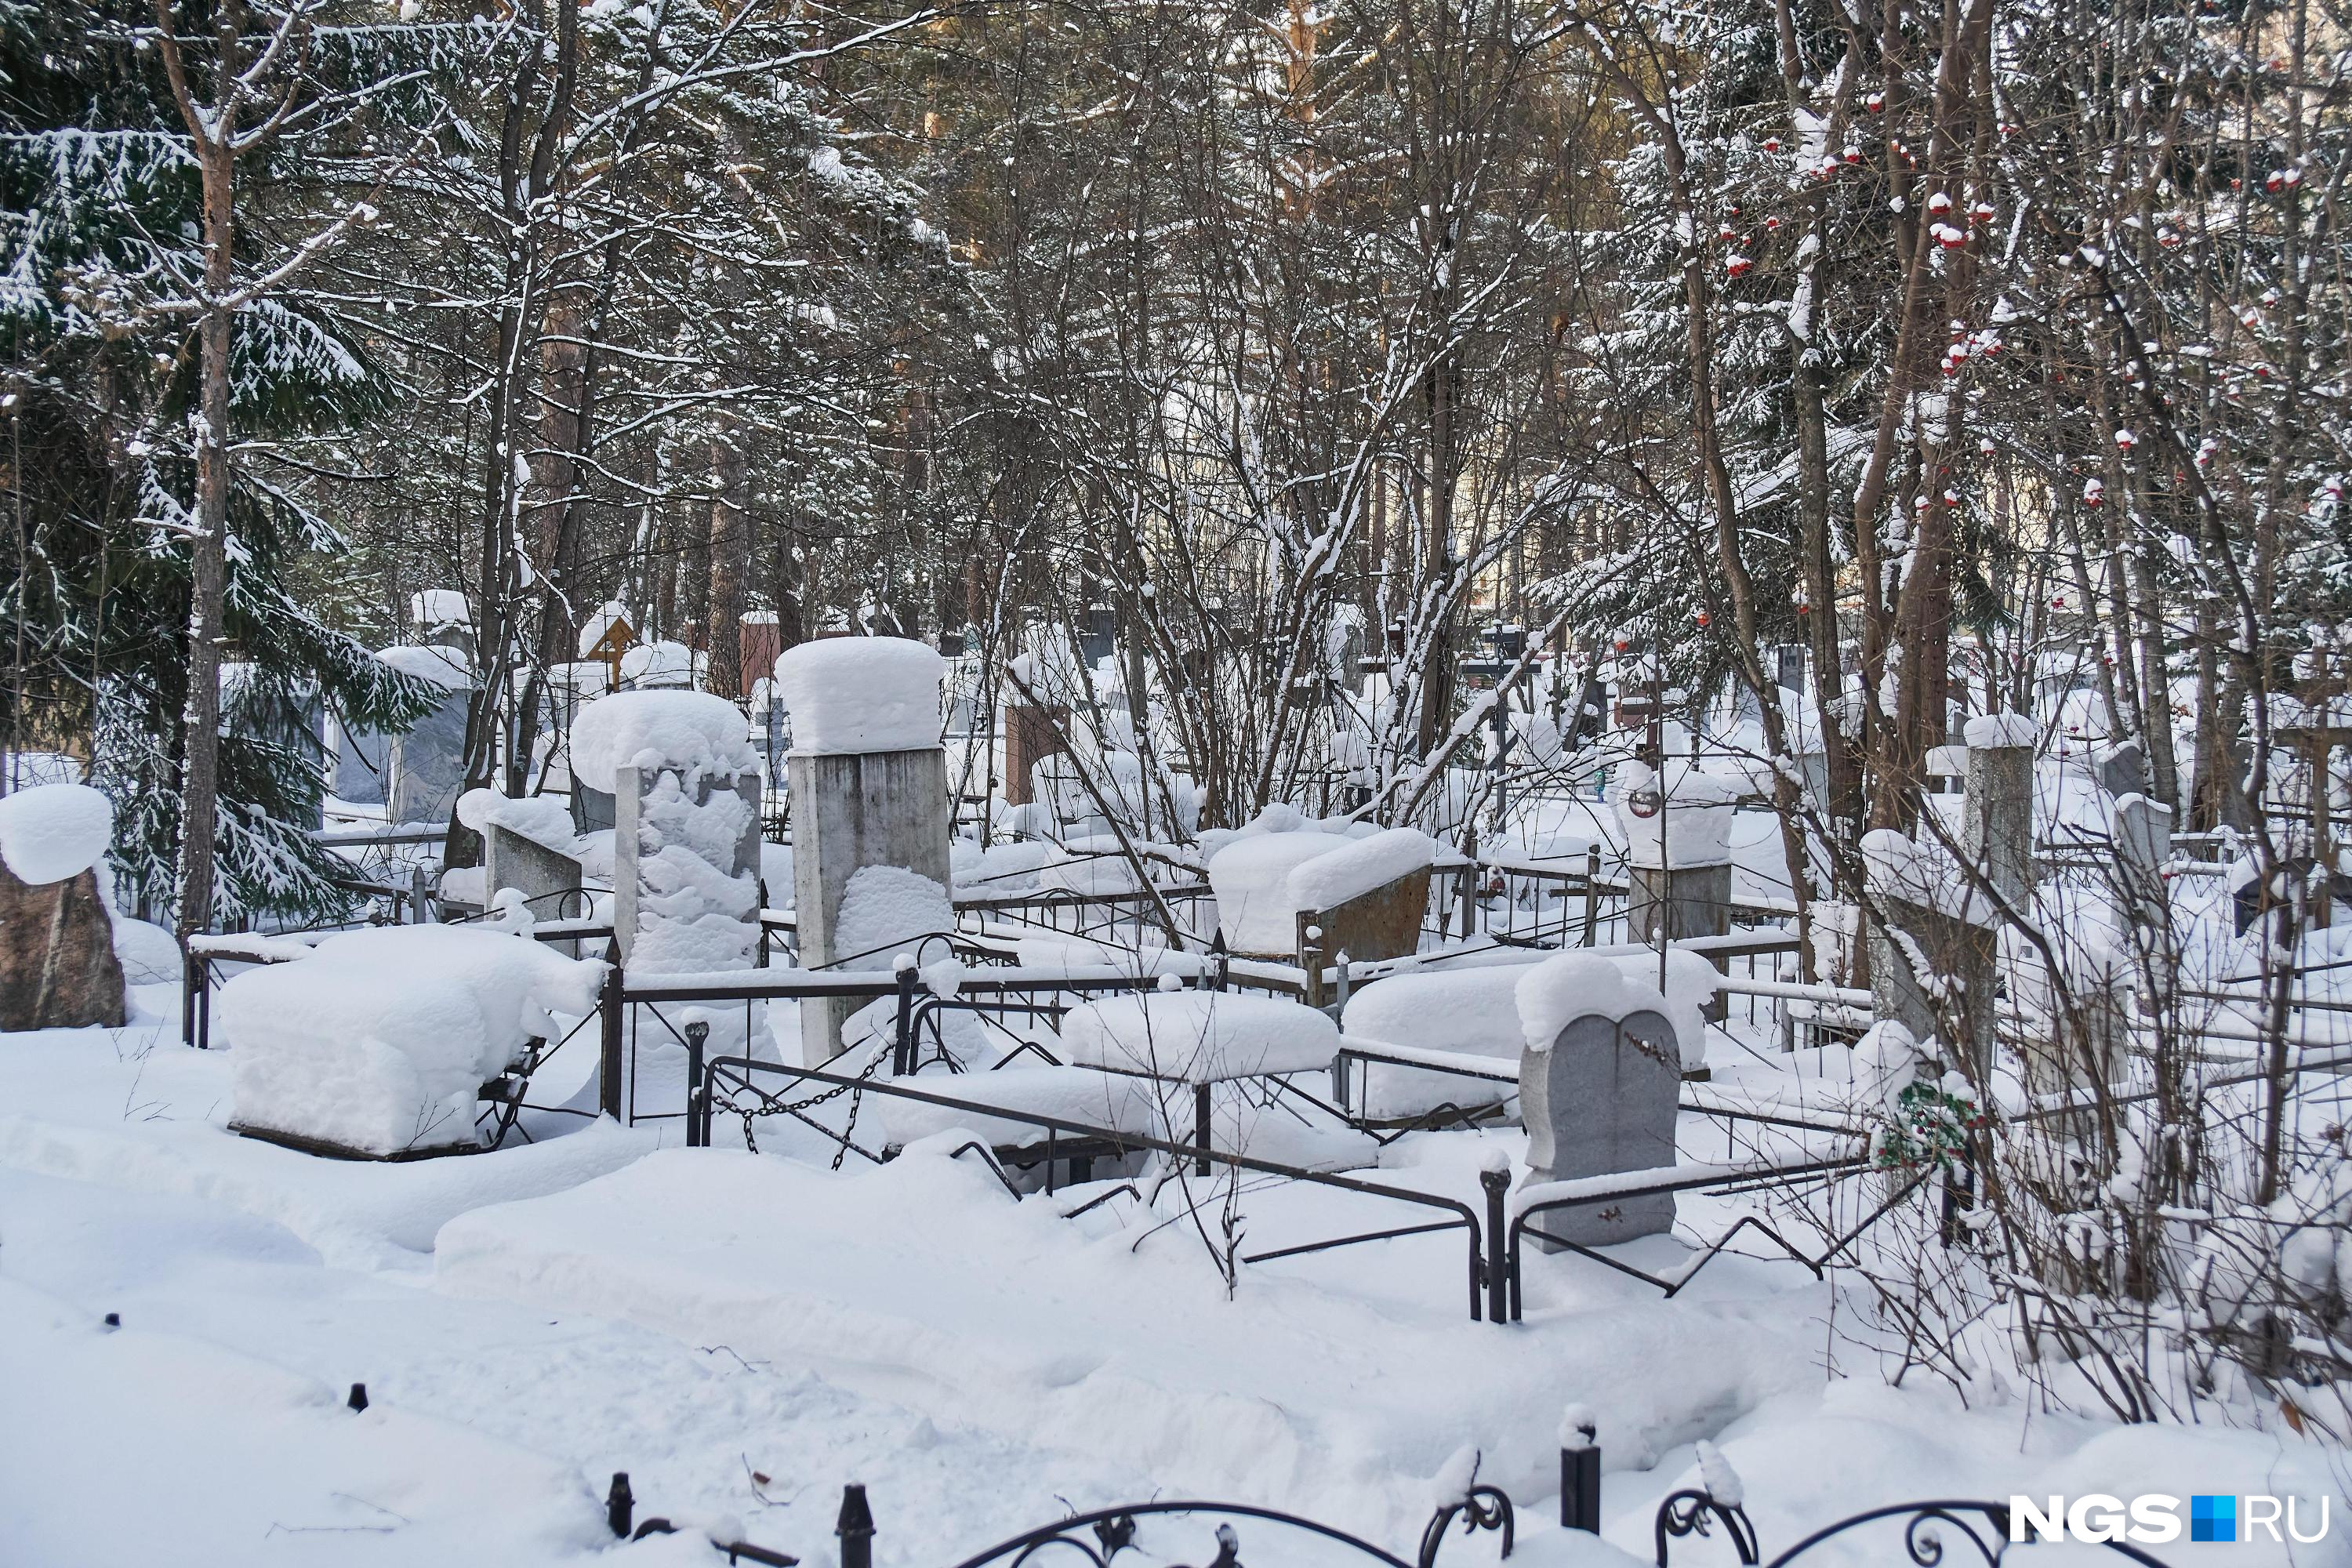 Подростки осквернили могилу на кладбище в Забайкалье